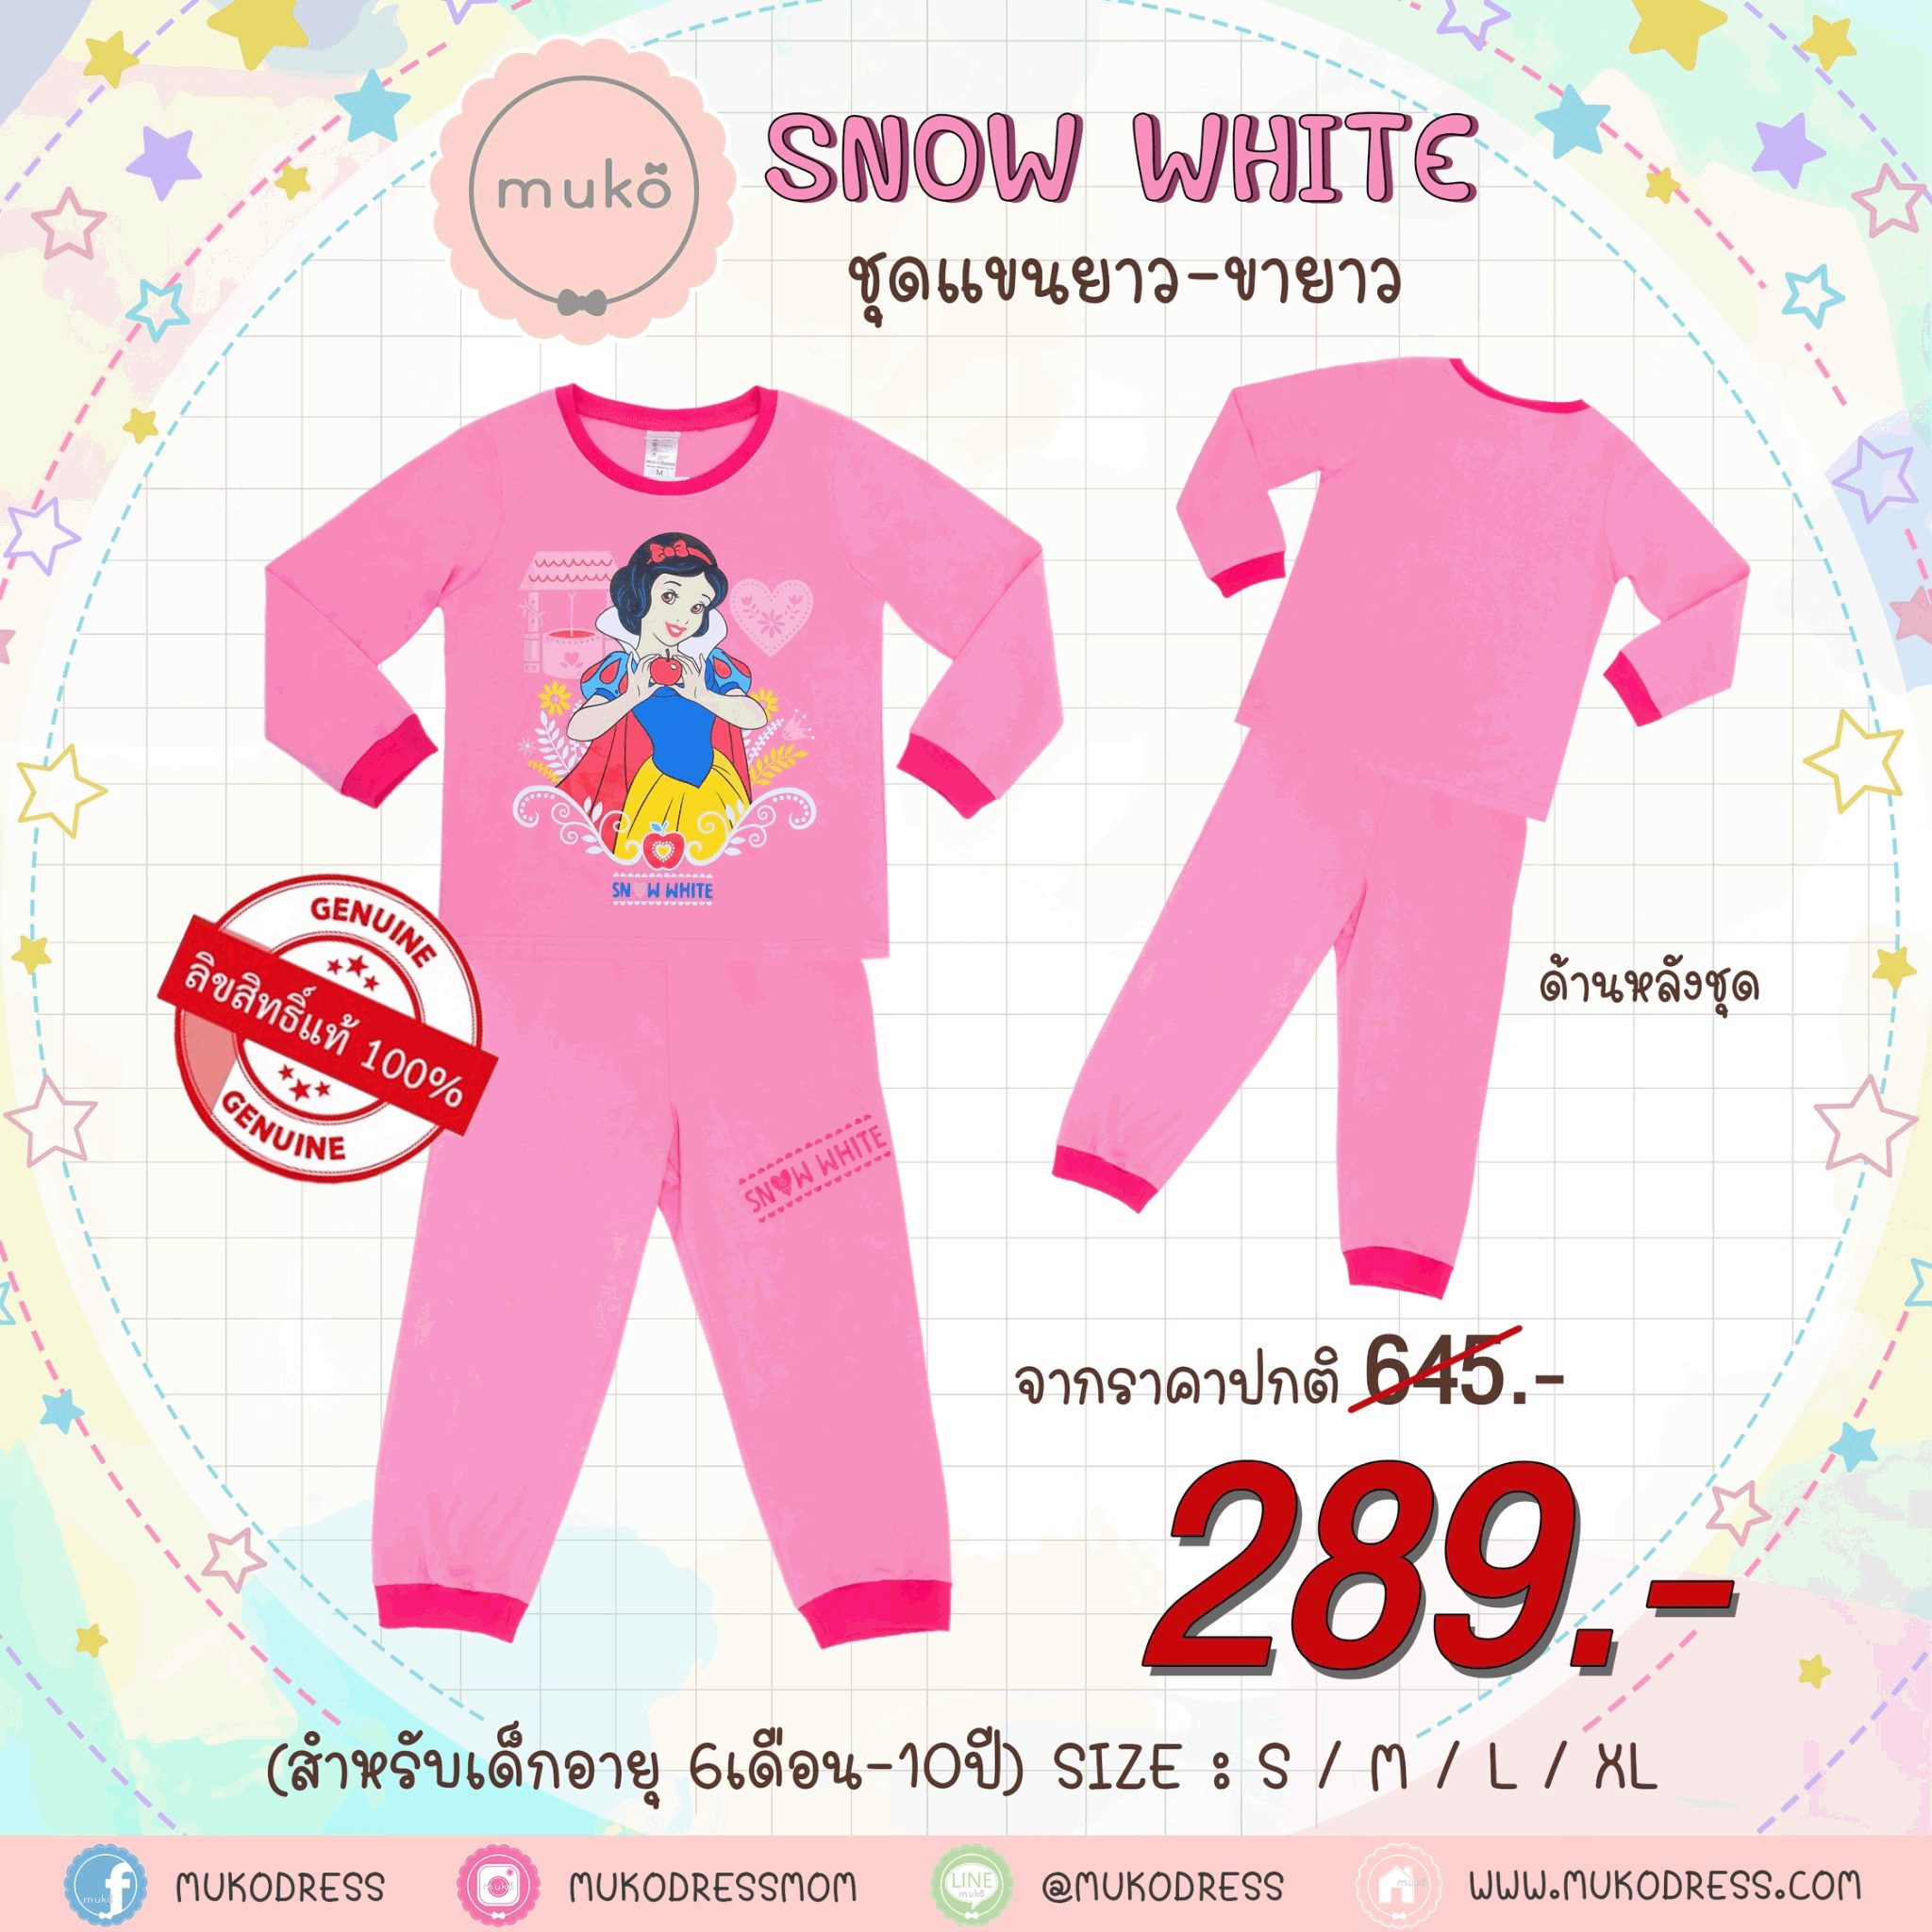 ชุดเด็ก 6-7 ขวบ แขนยาว-ขายาว (Size L) DPC127-09-XL-Pink L ลายเจ้าหญิงสโนไวท์ Snow white สีชมพู (ชมพูทั้งชุดขอบบานเย็น)